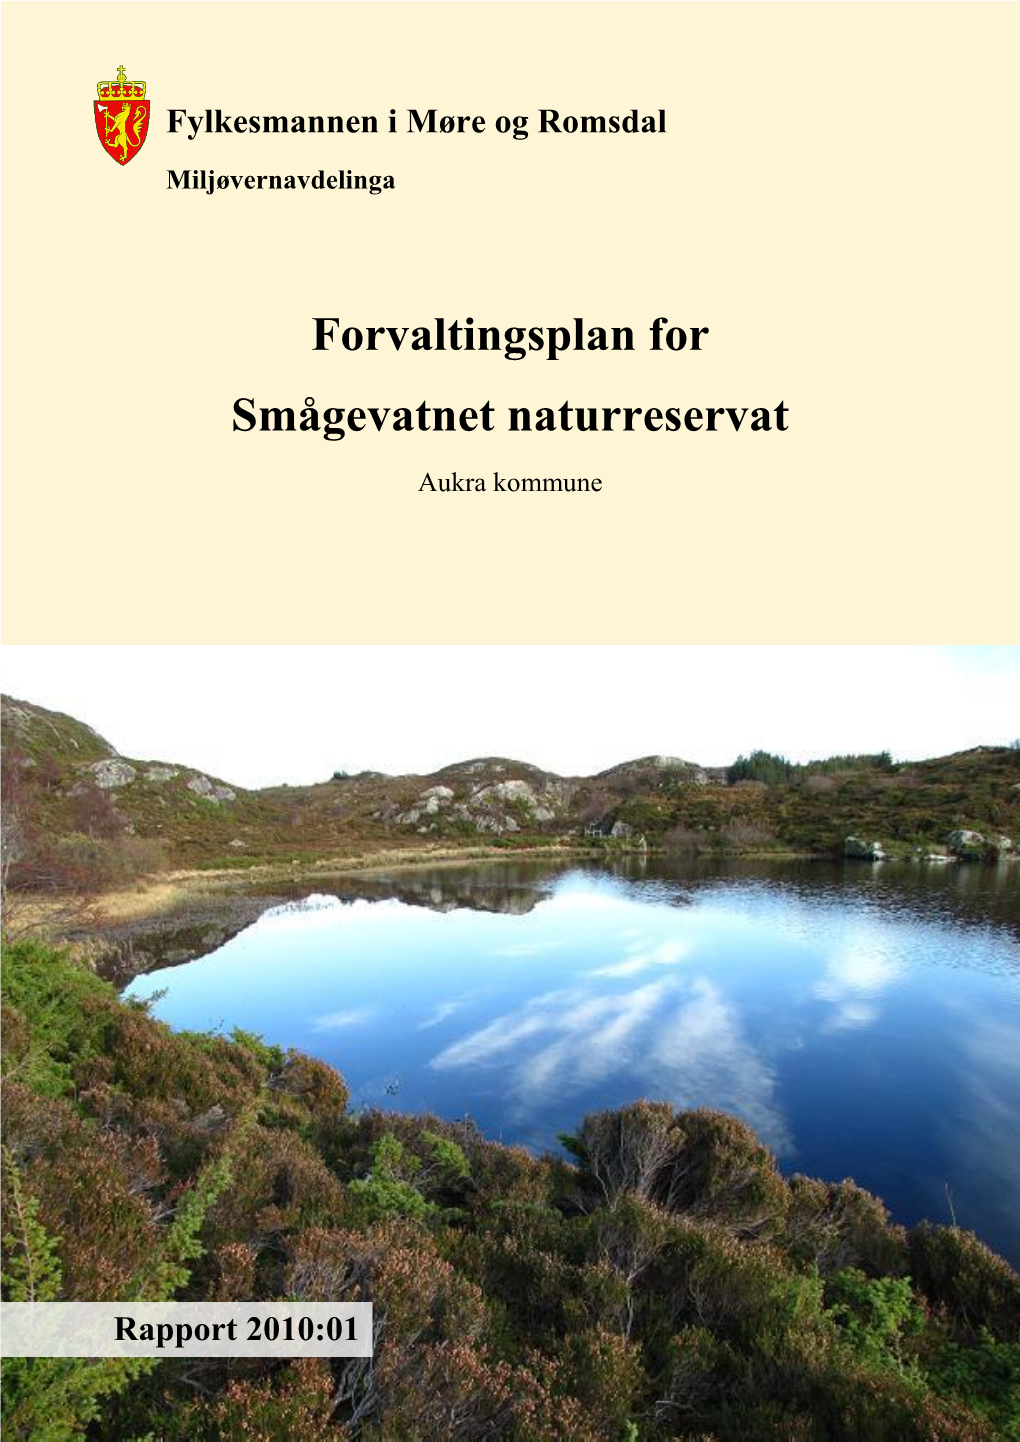 Forvaltingsplan for Smågevatnet Naturreservat